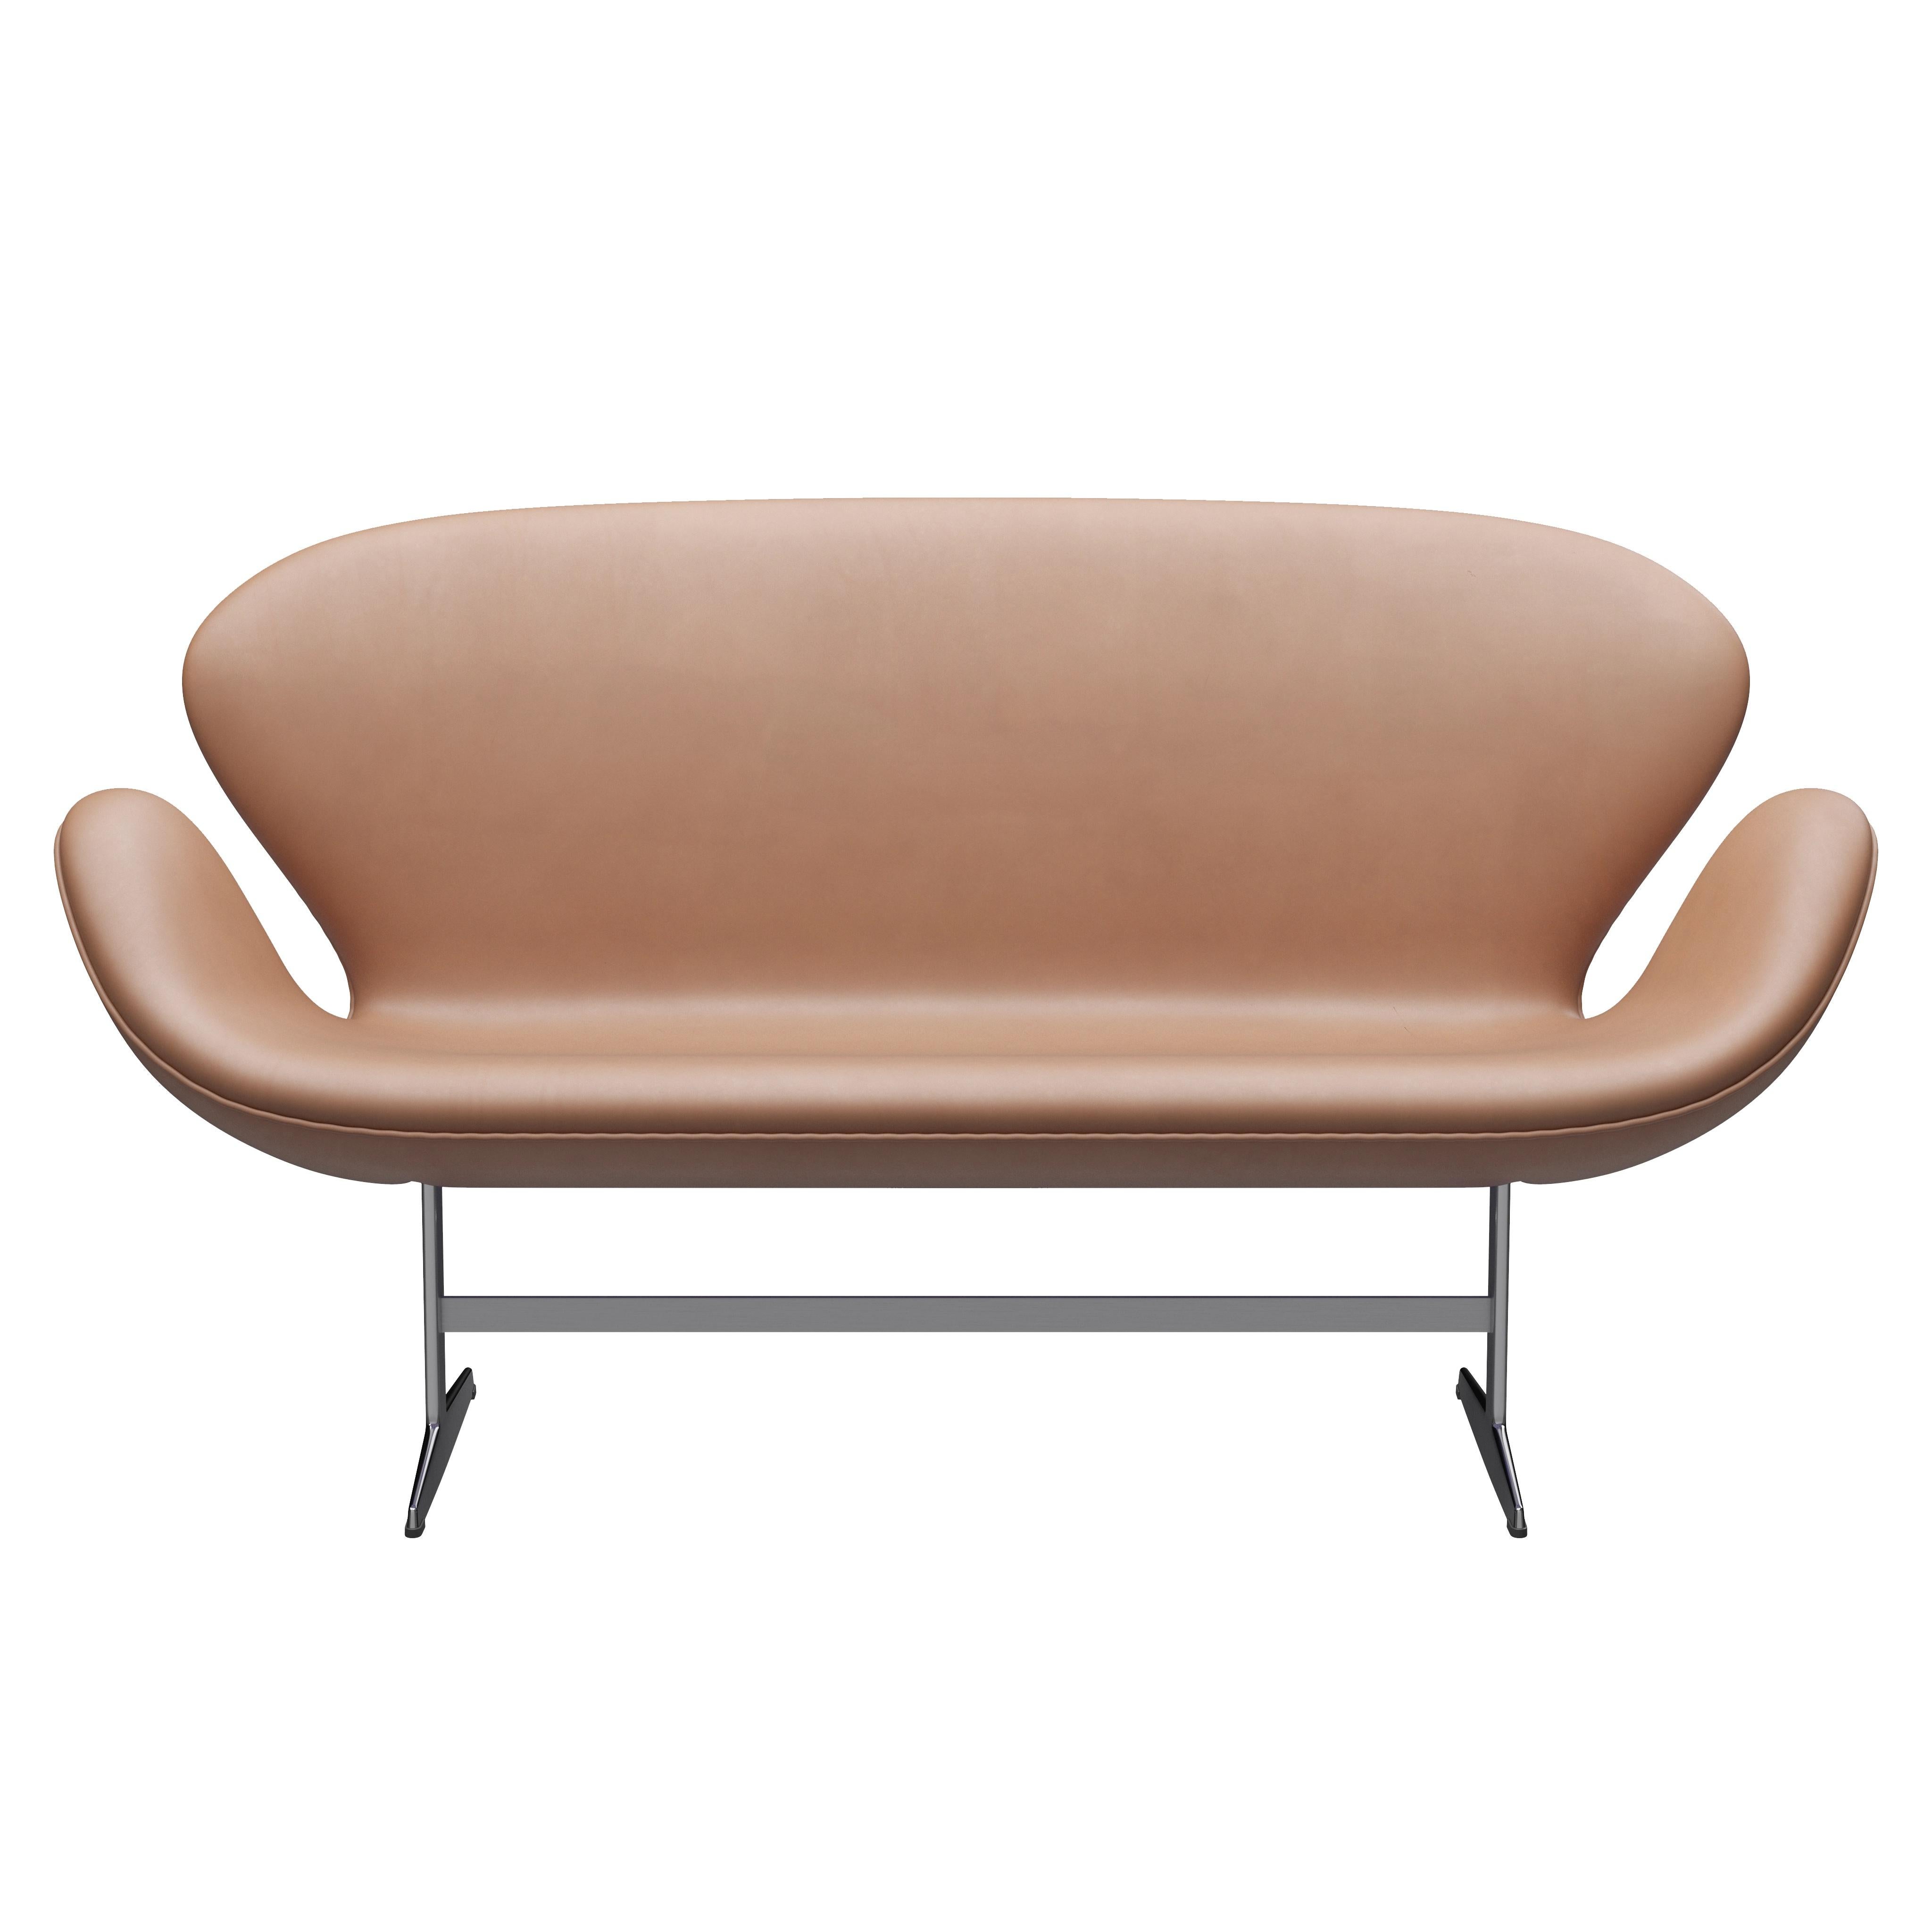 Arne Jacobsen 'Swan' Sofa for Fritz Hansen in Leather Upholstery (Cat. 5) For Sale 8